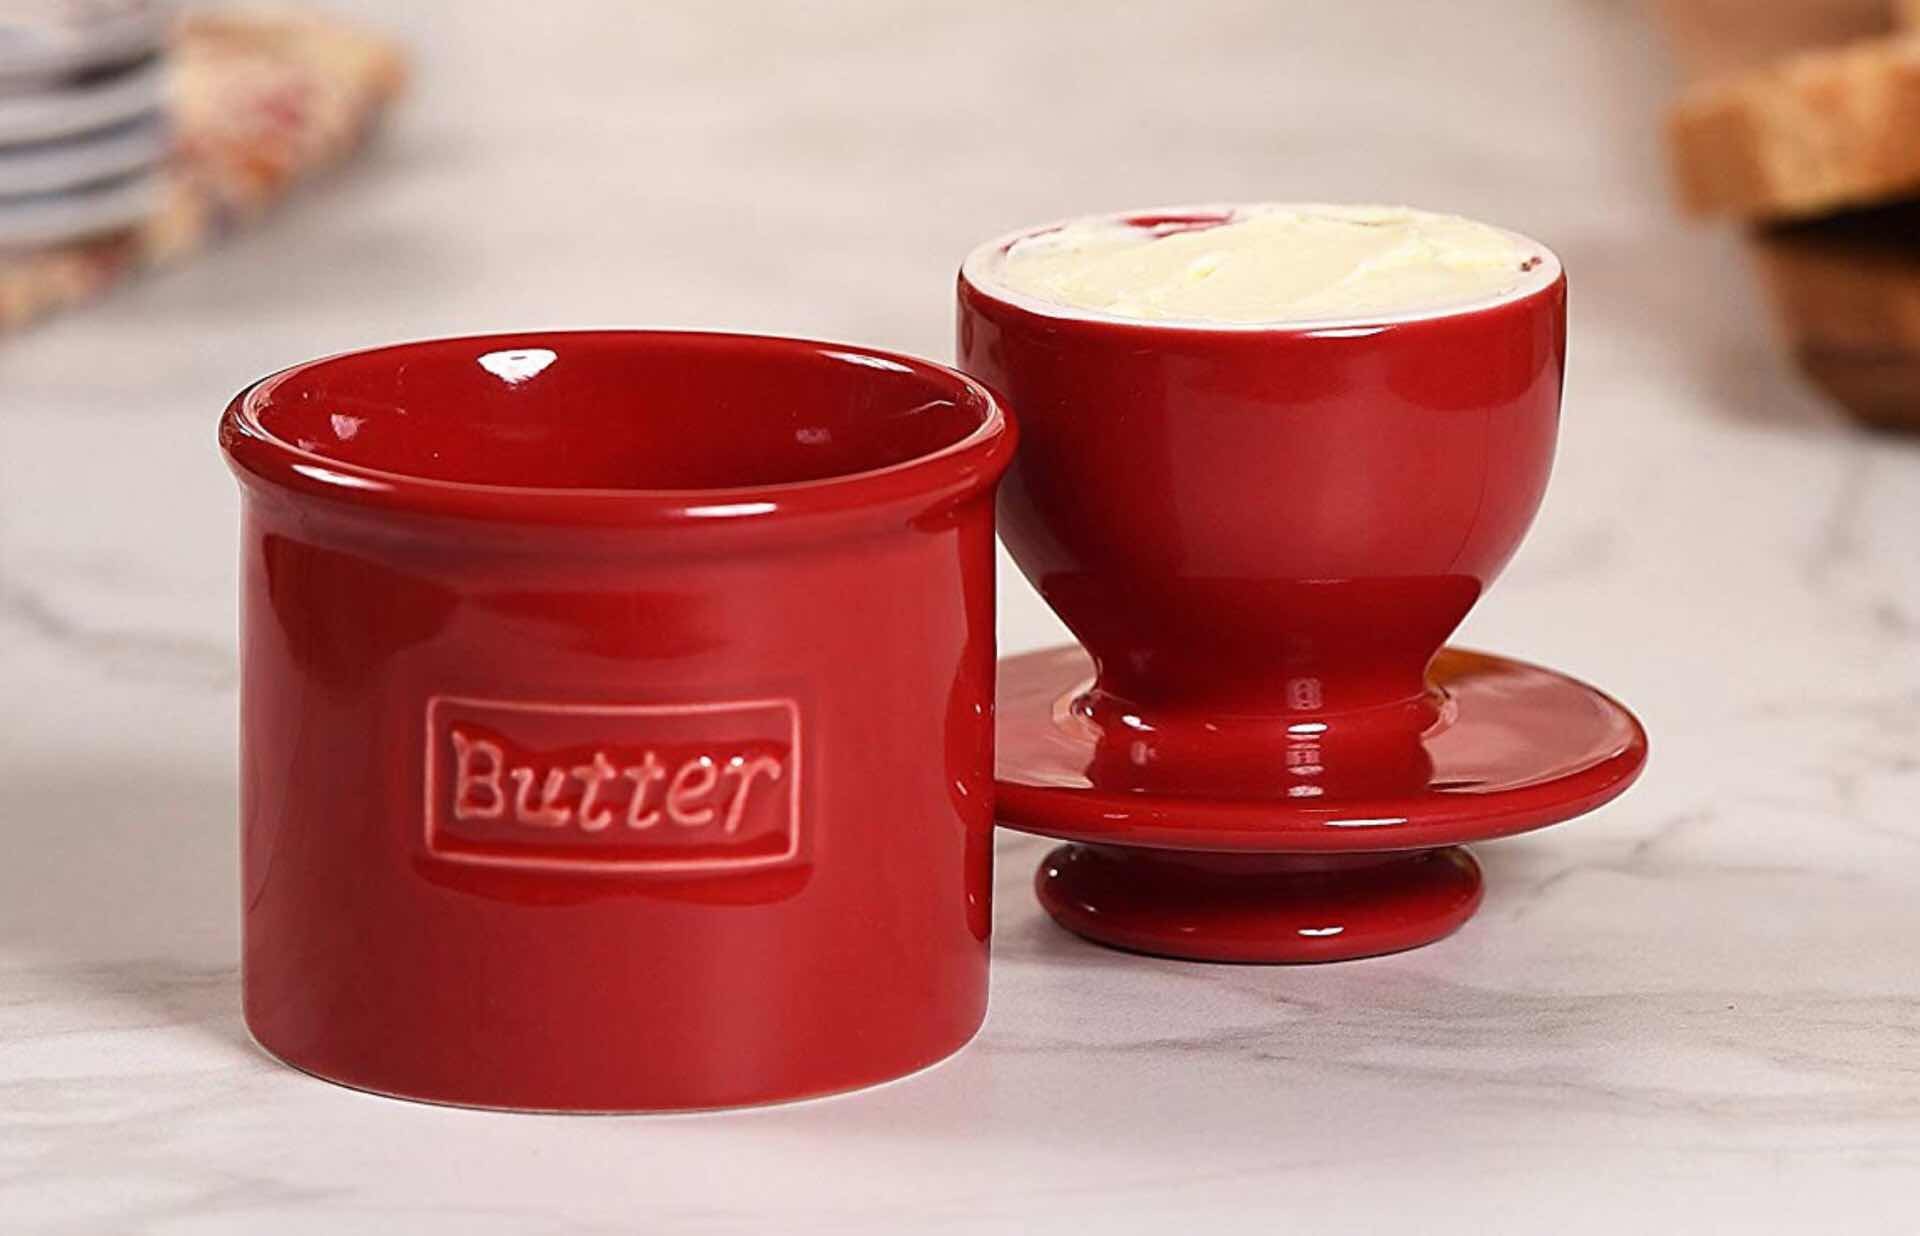 The Butter Bell. ($25)